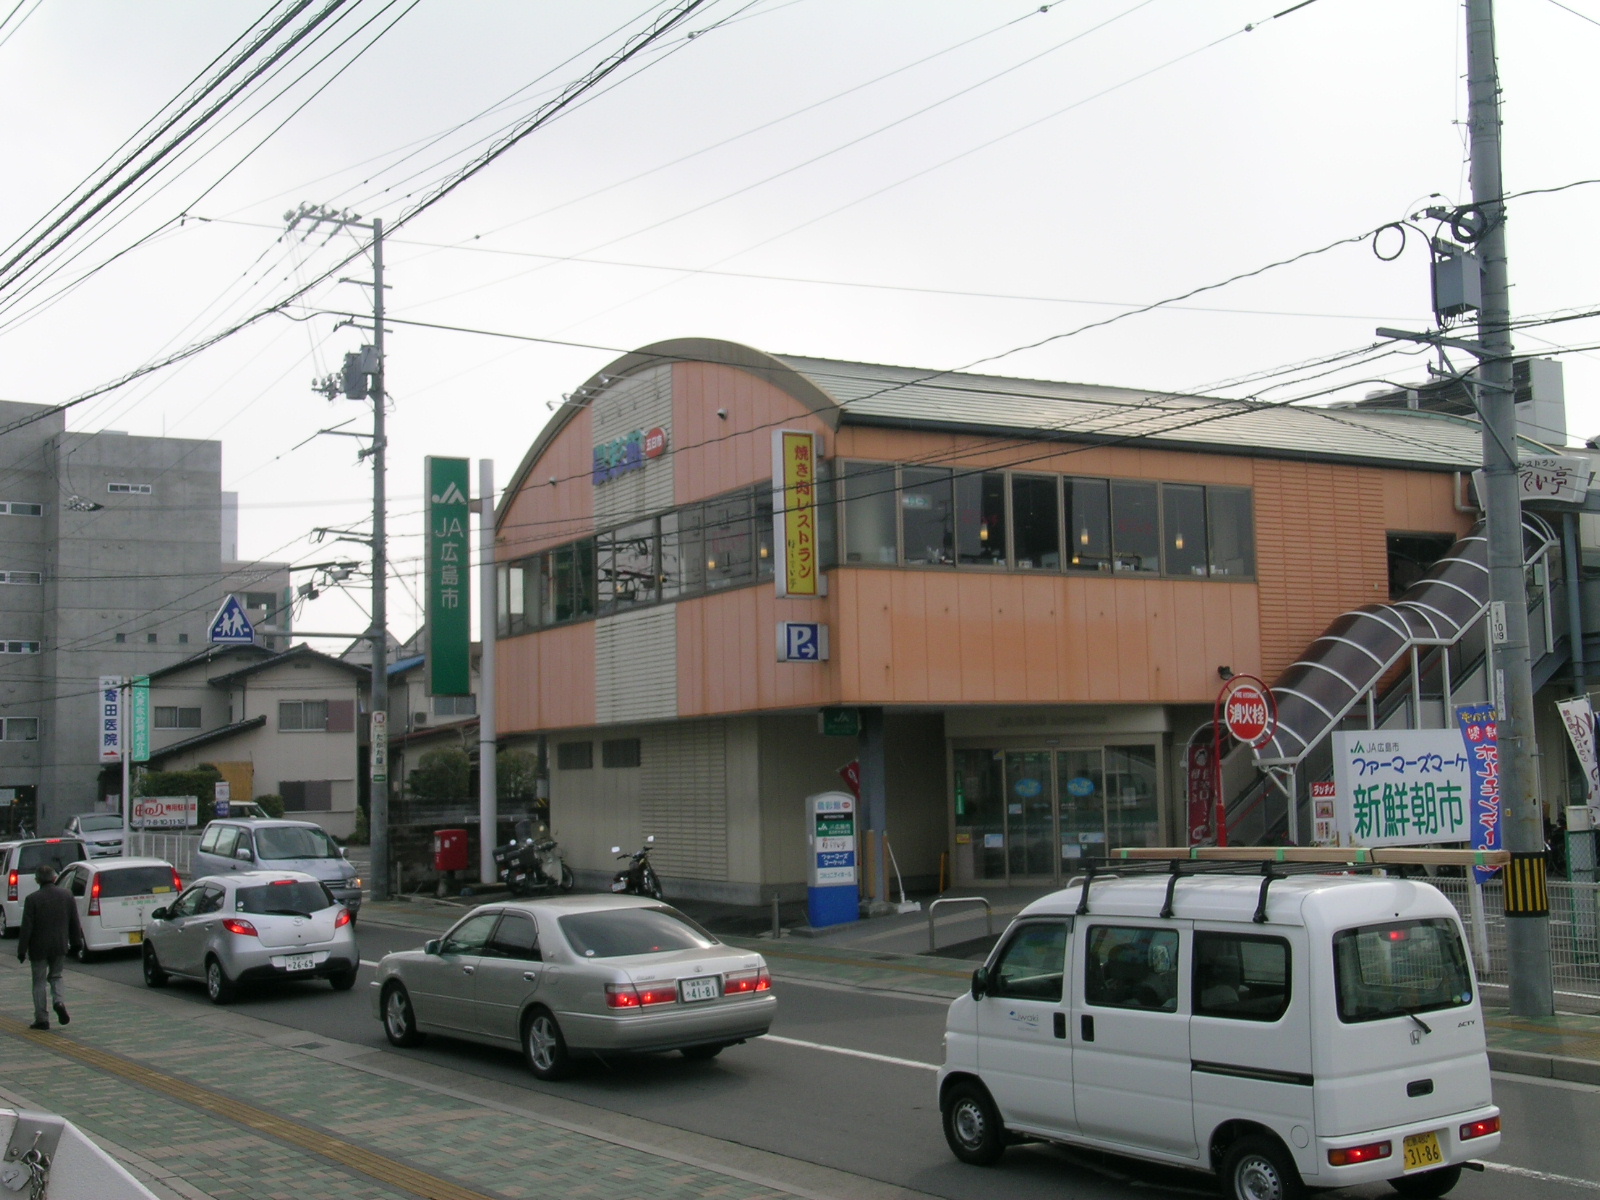 Bank. JA Hiroshima Itsukaichi Central Branch (Bank) to 134m